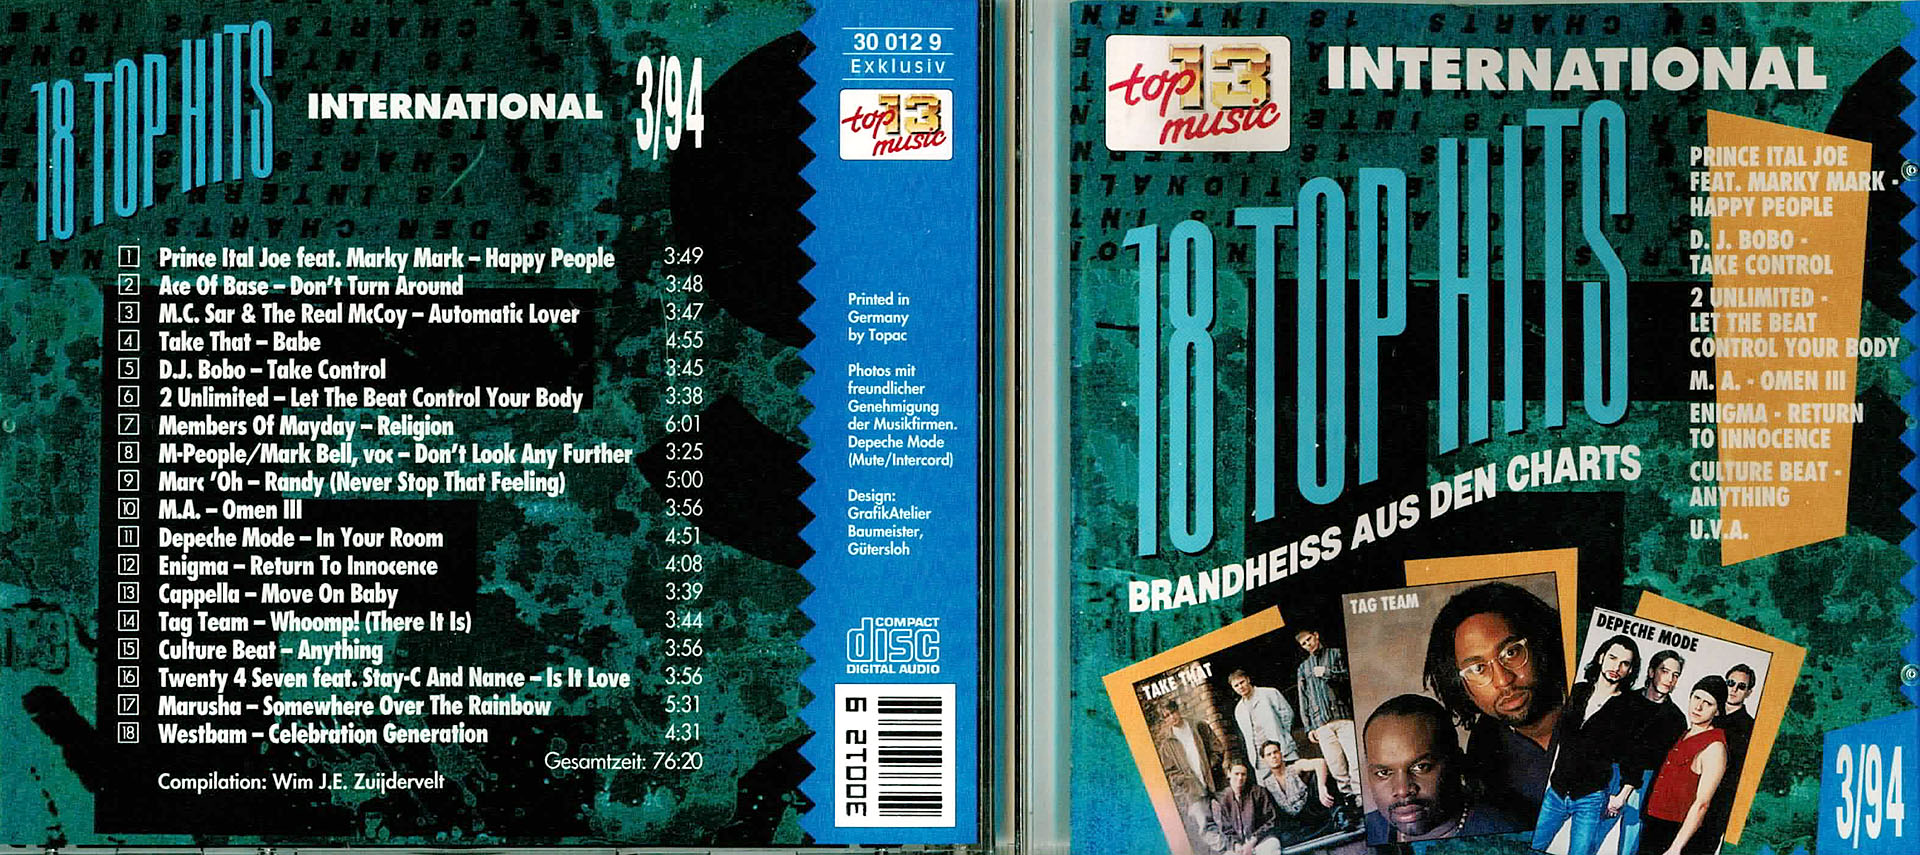 18 Top Hits aus den Charts 3/94 - Prince Ital Joe Feat. Mark Mark / D.J. Bobo / 2 Unlimited / M. A. / Enigma u.v.a.m